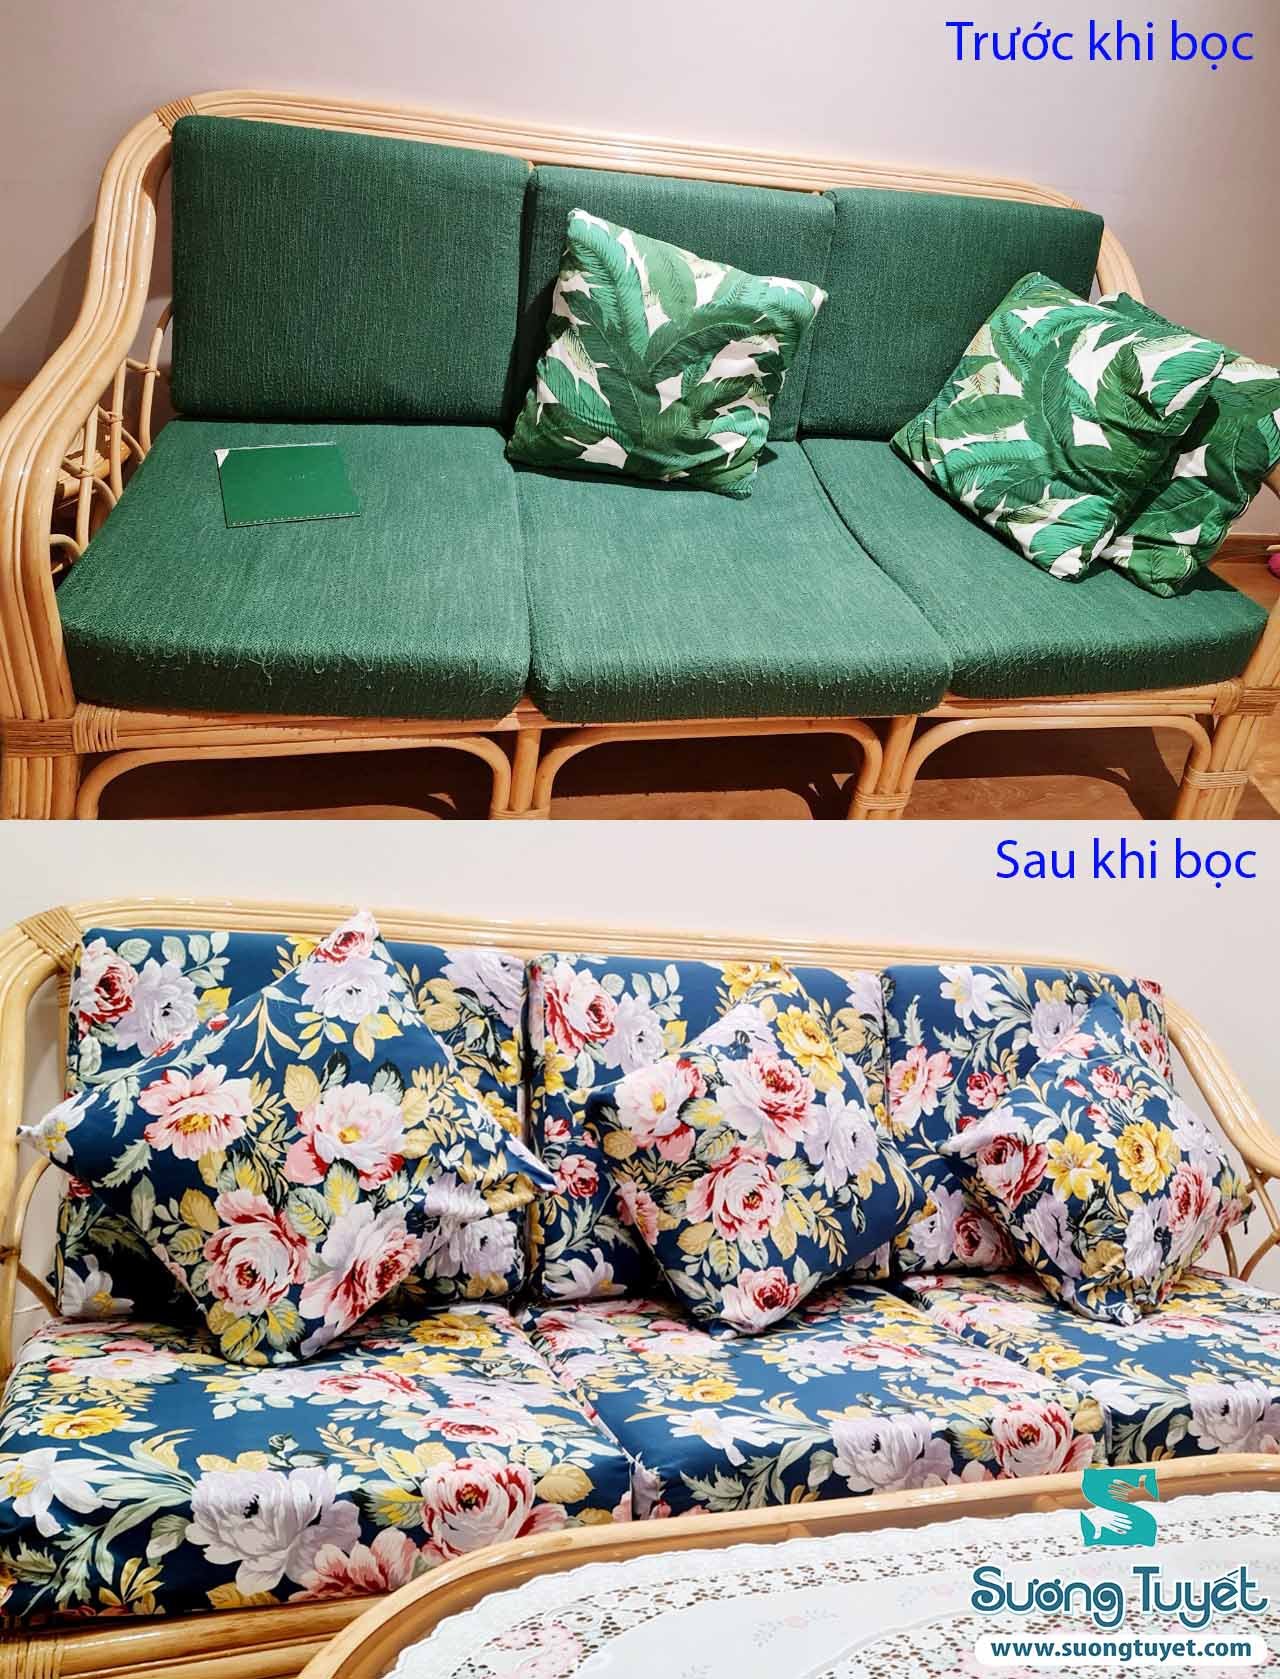 Thay đệm ghế cho khách ở Sài Gòn